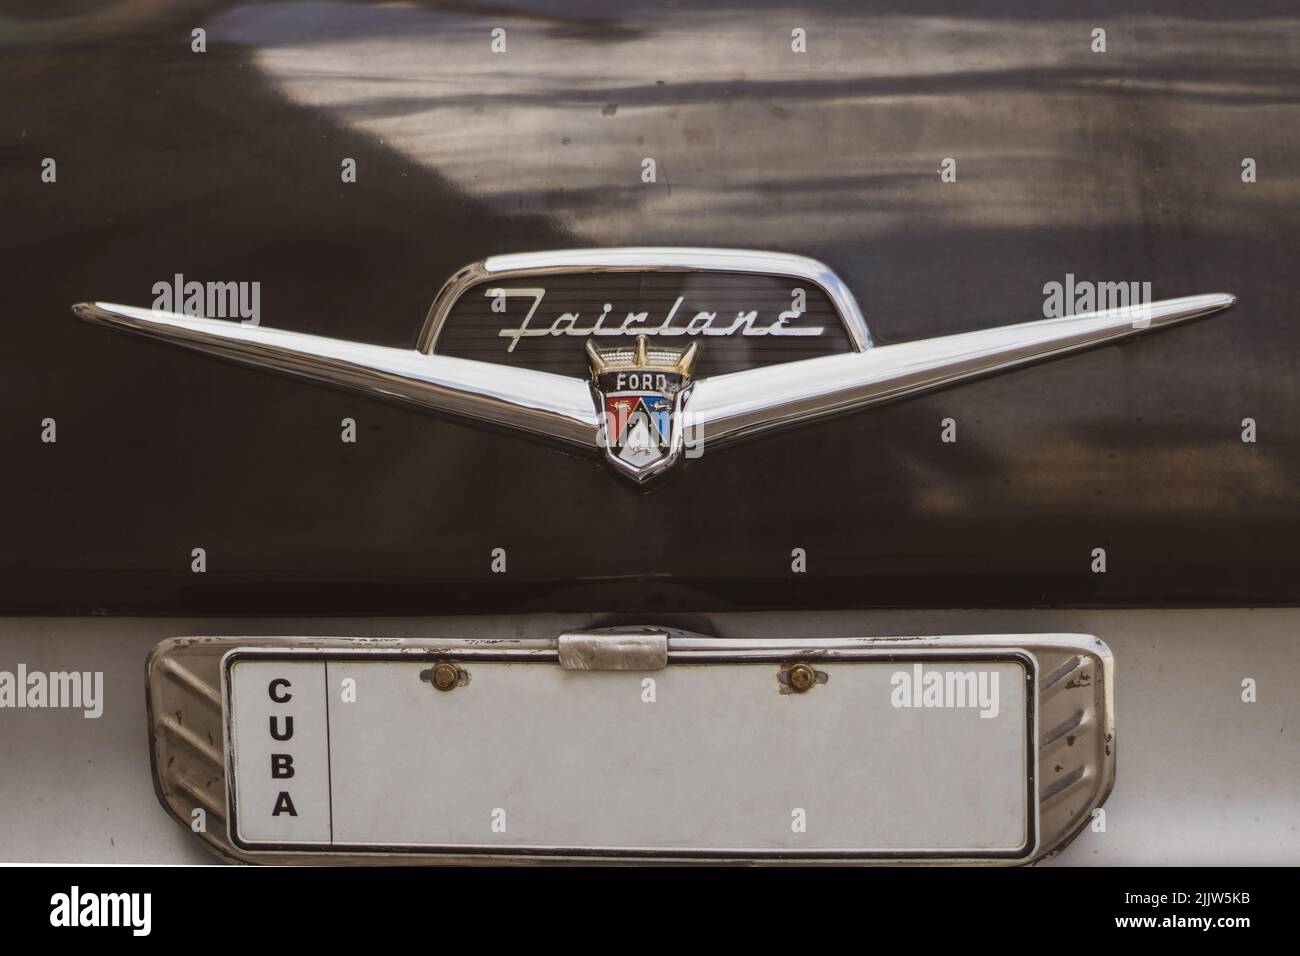 Gros plan sur le logo d'une voiture Ford rétro Banque D'Images